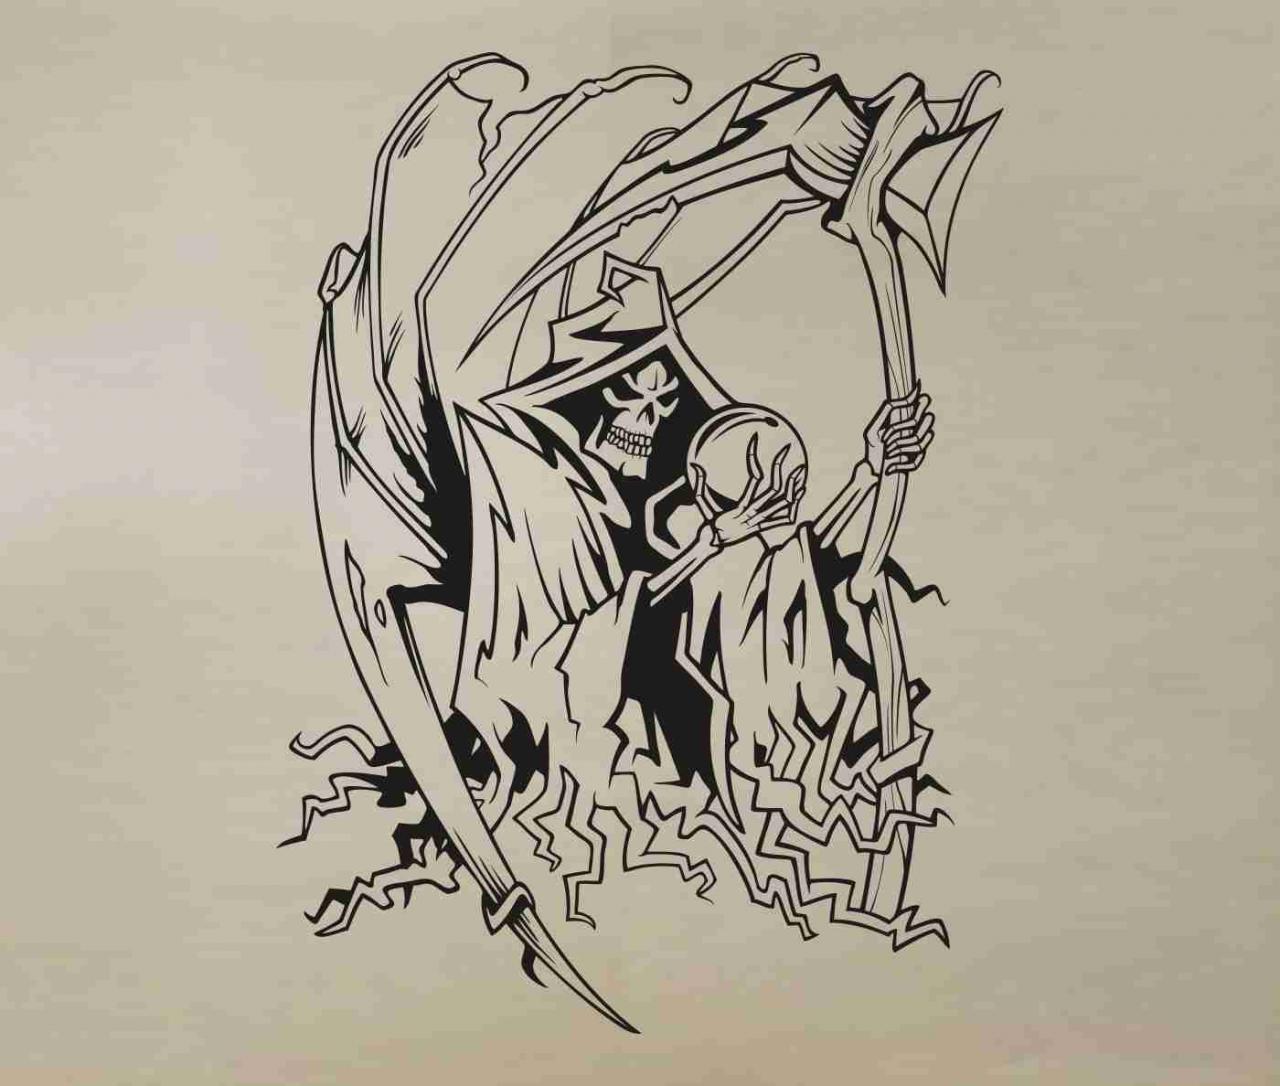 Skull Version 129 Bones Grim Reaper Wall Vinyl Decal Sticker Art Graphic Sticker Skulls